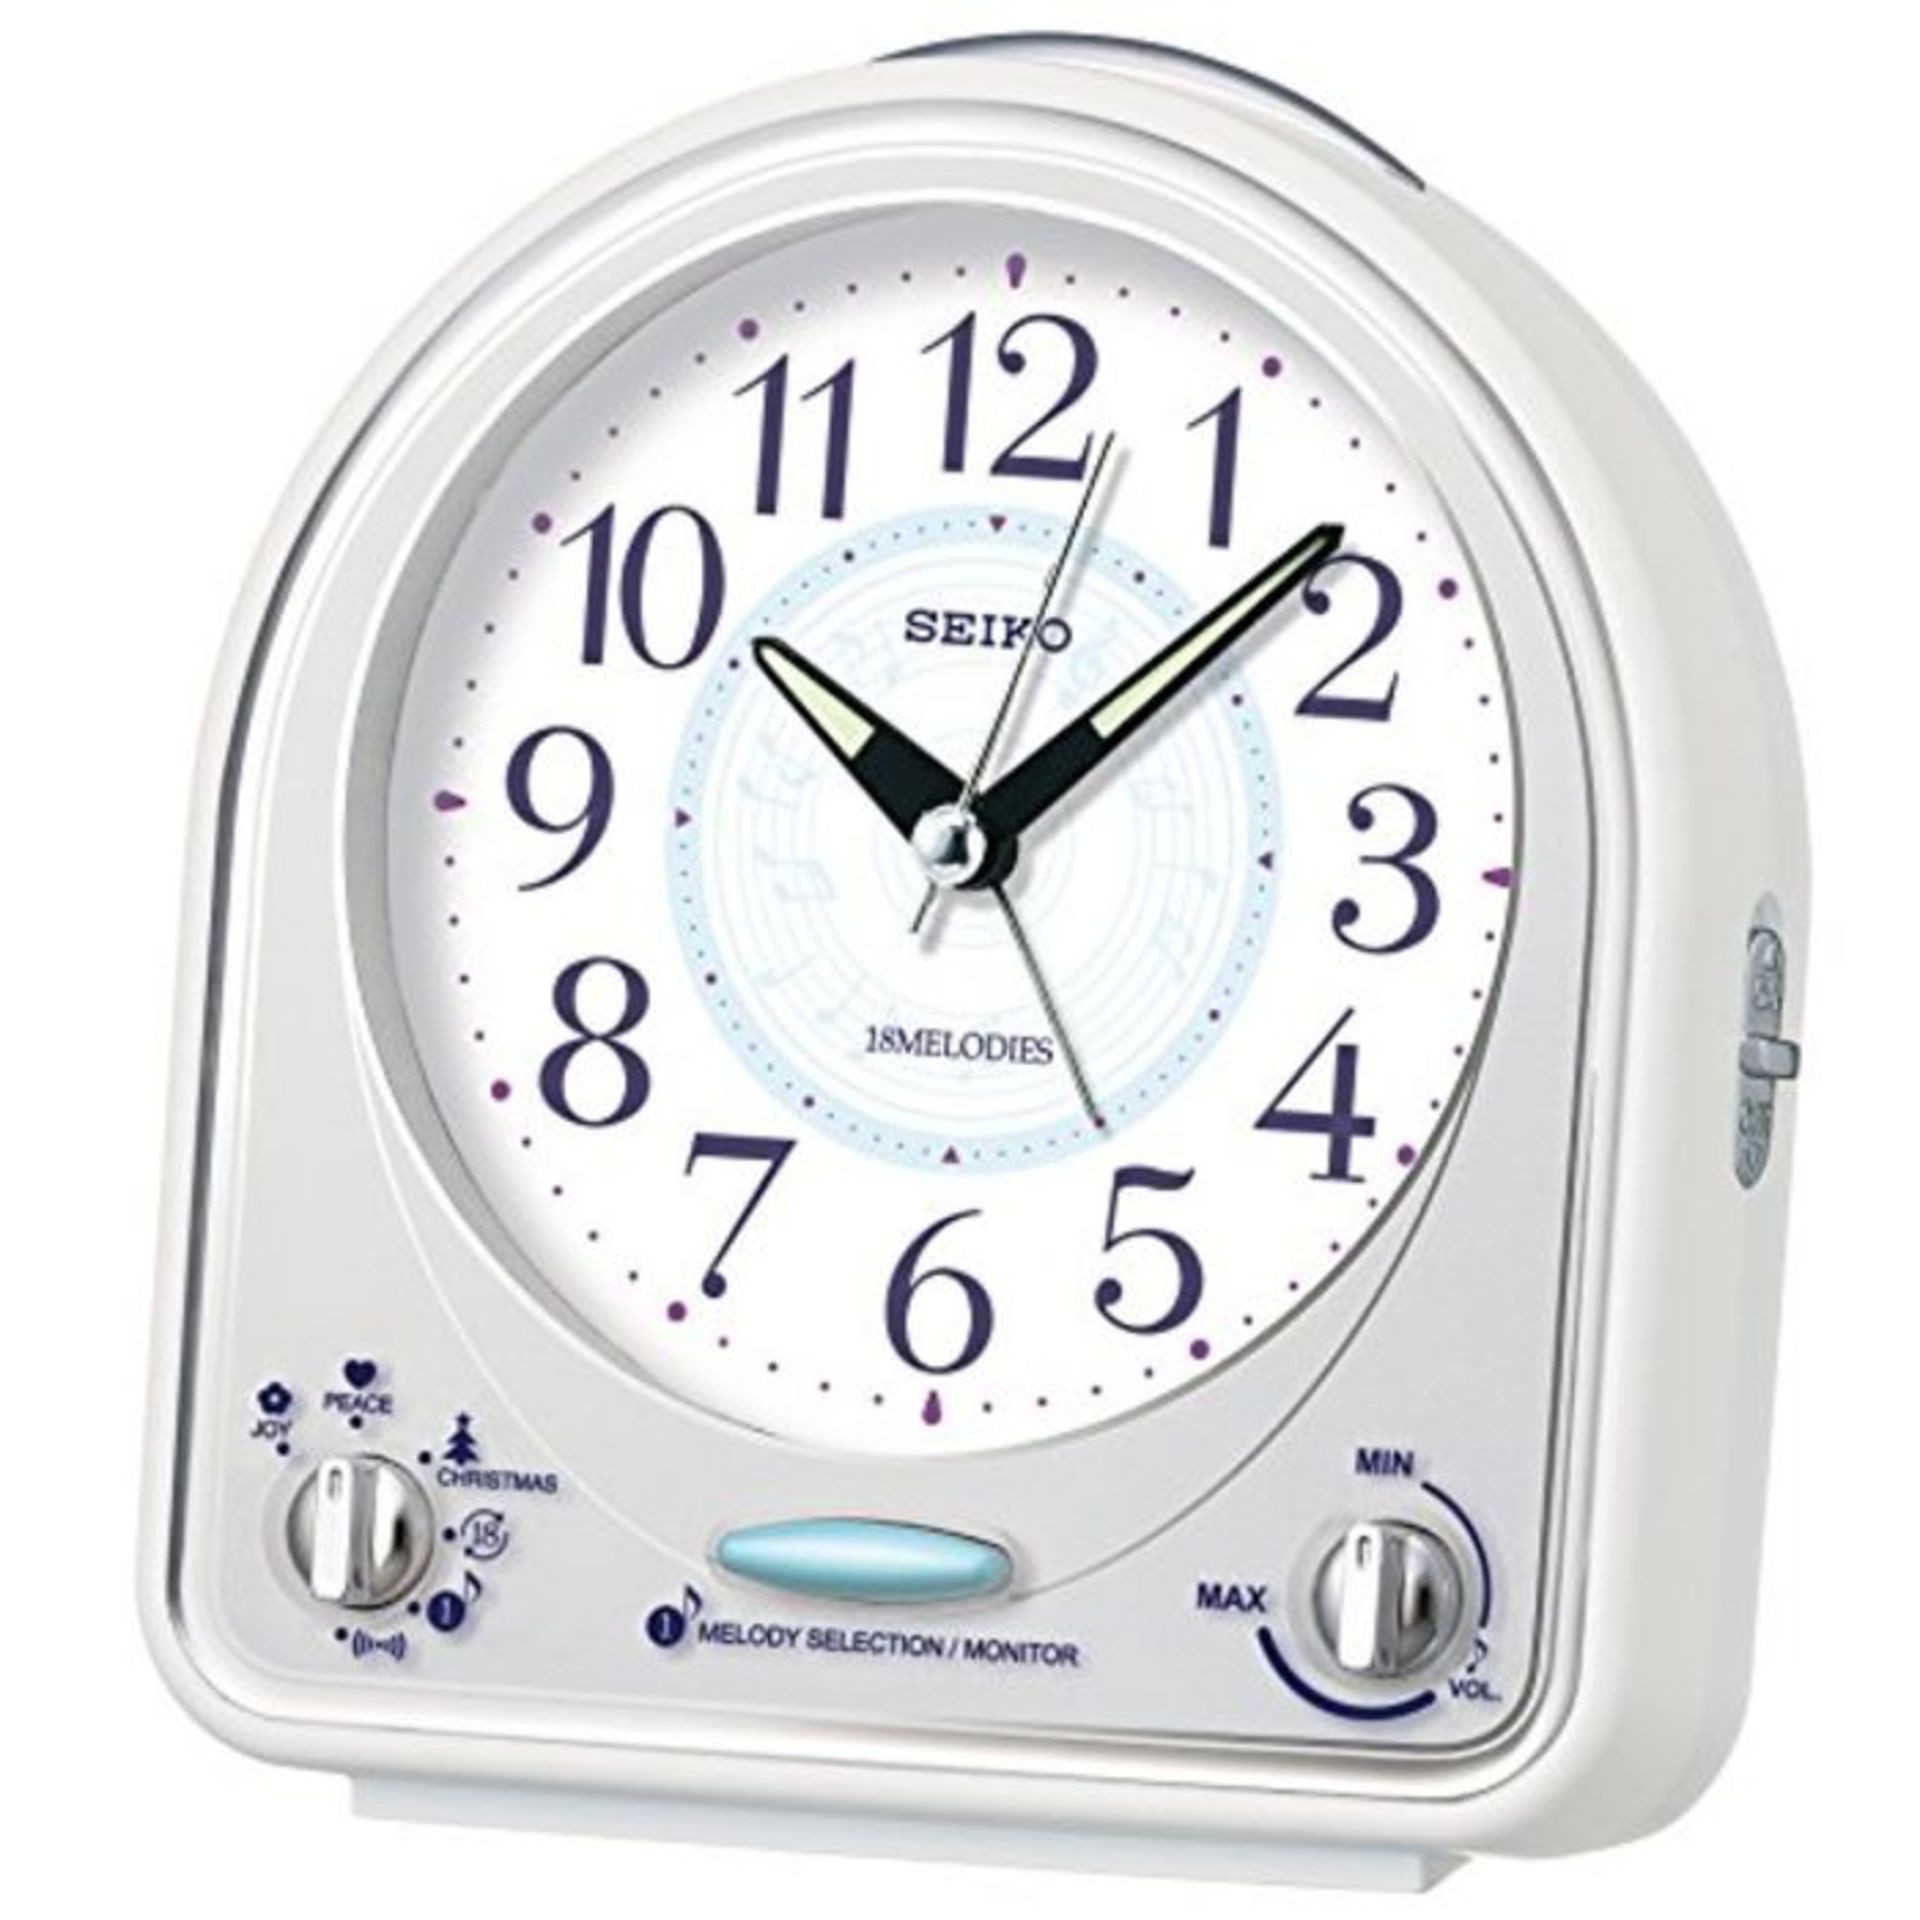 Seiko Alarm Clock, White, One Size